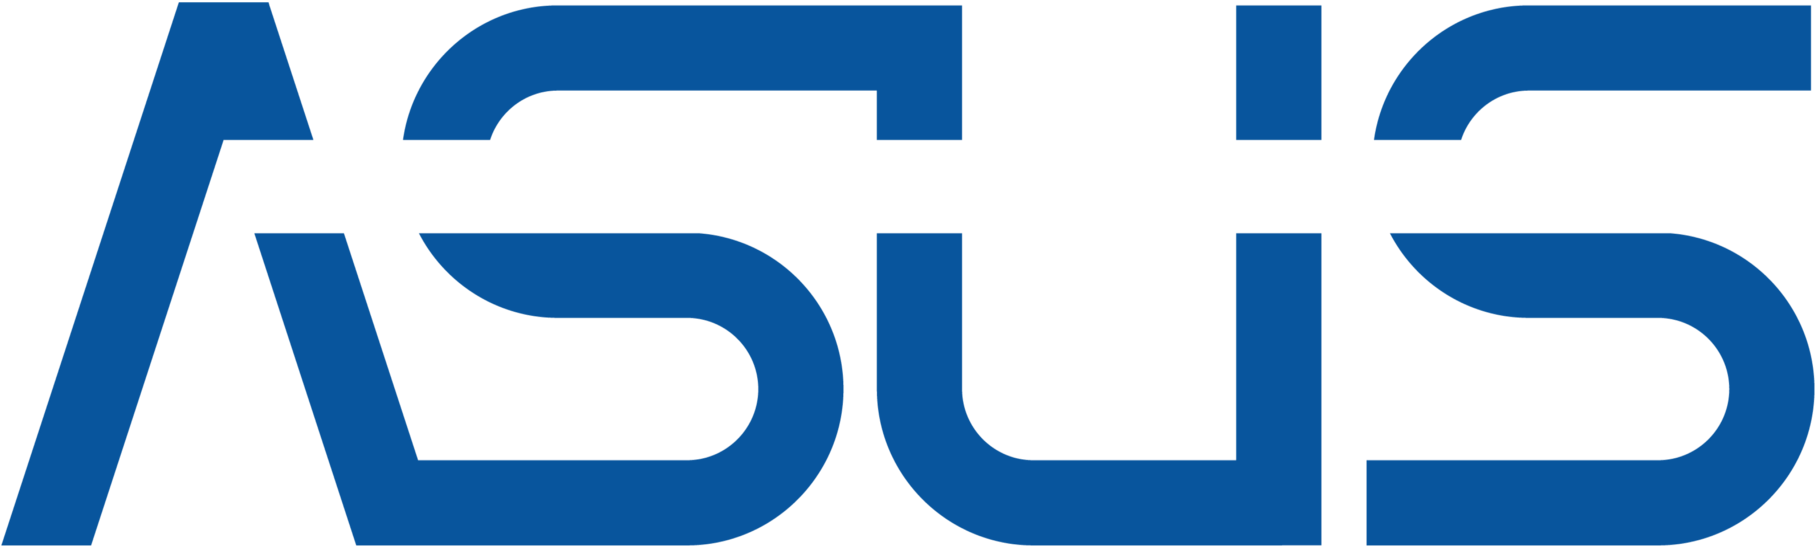 Asus Logo Blue Background PNG image